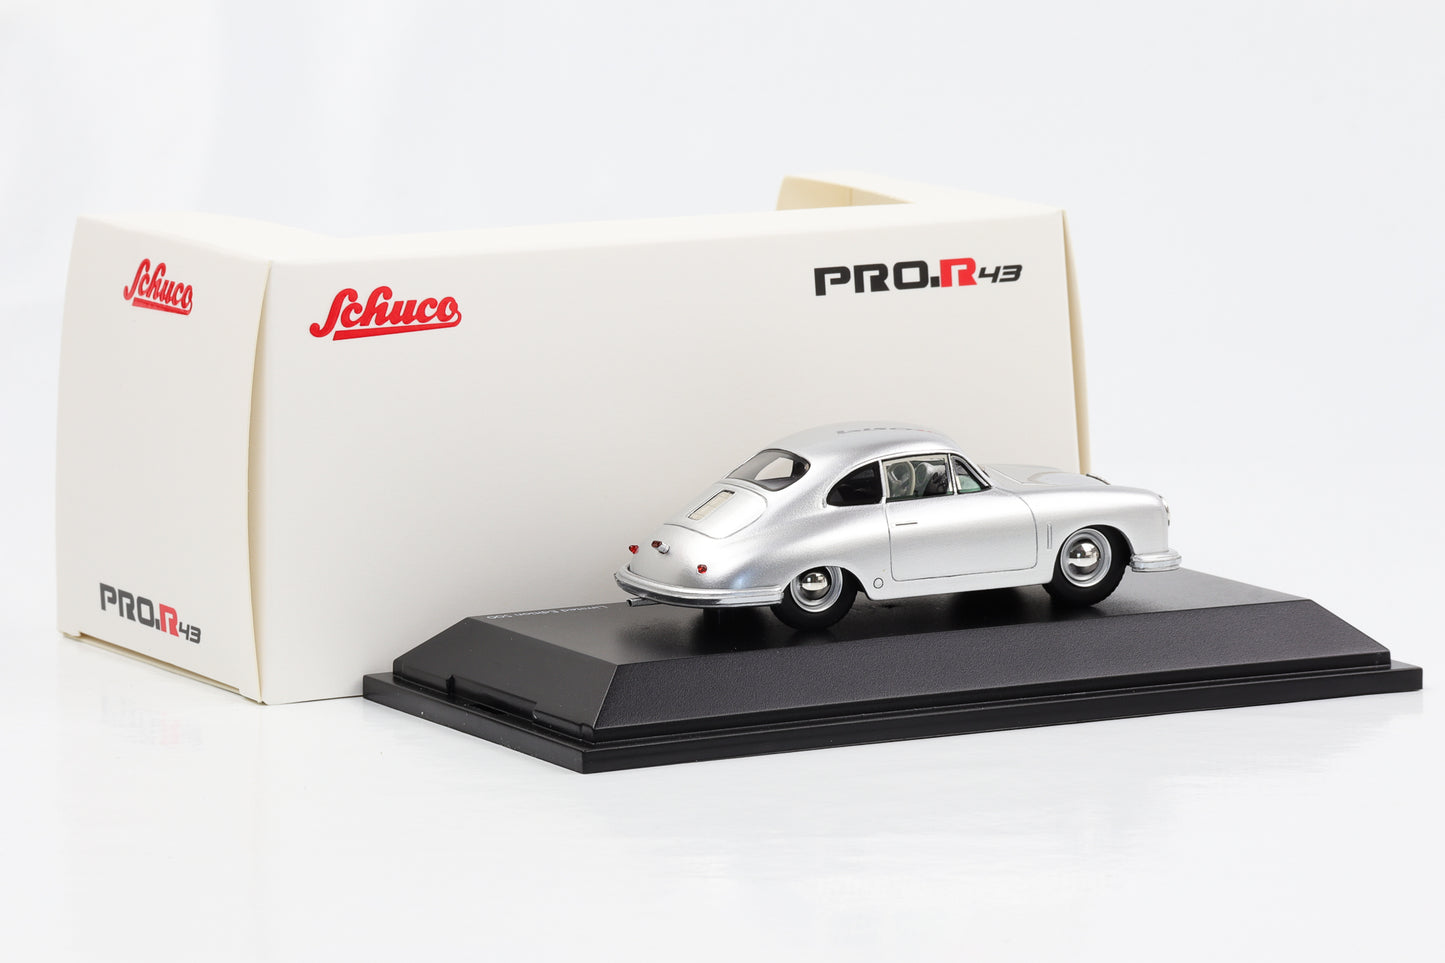 1:43 Porsche 356 Gmünd Coupé 1948 argent Schuco PRO.R43 résine